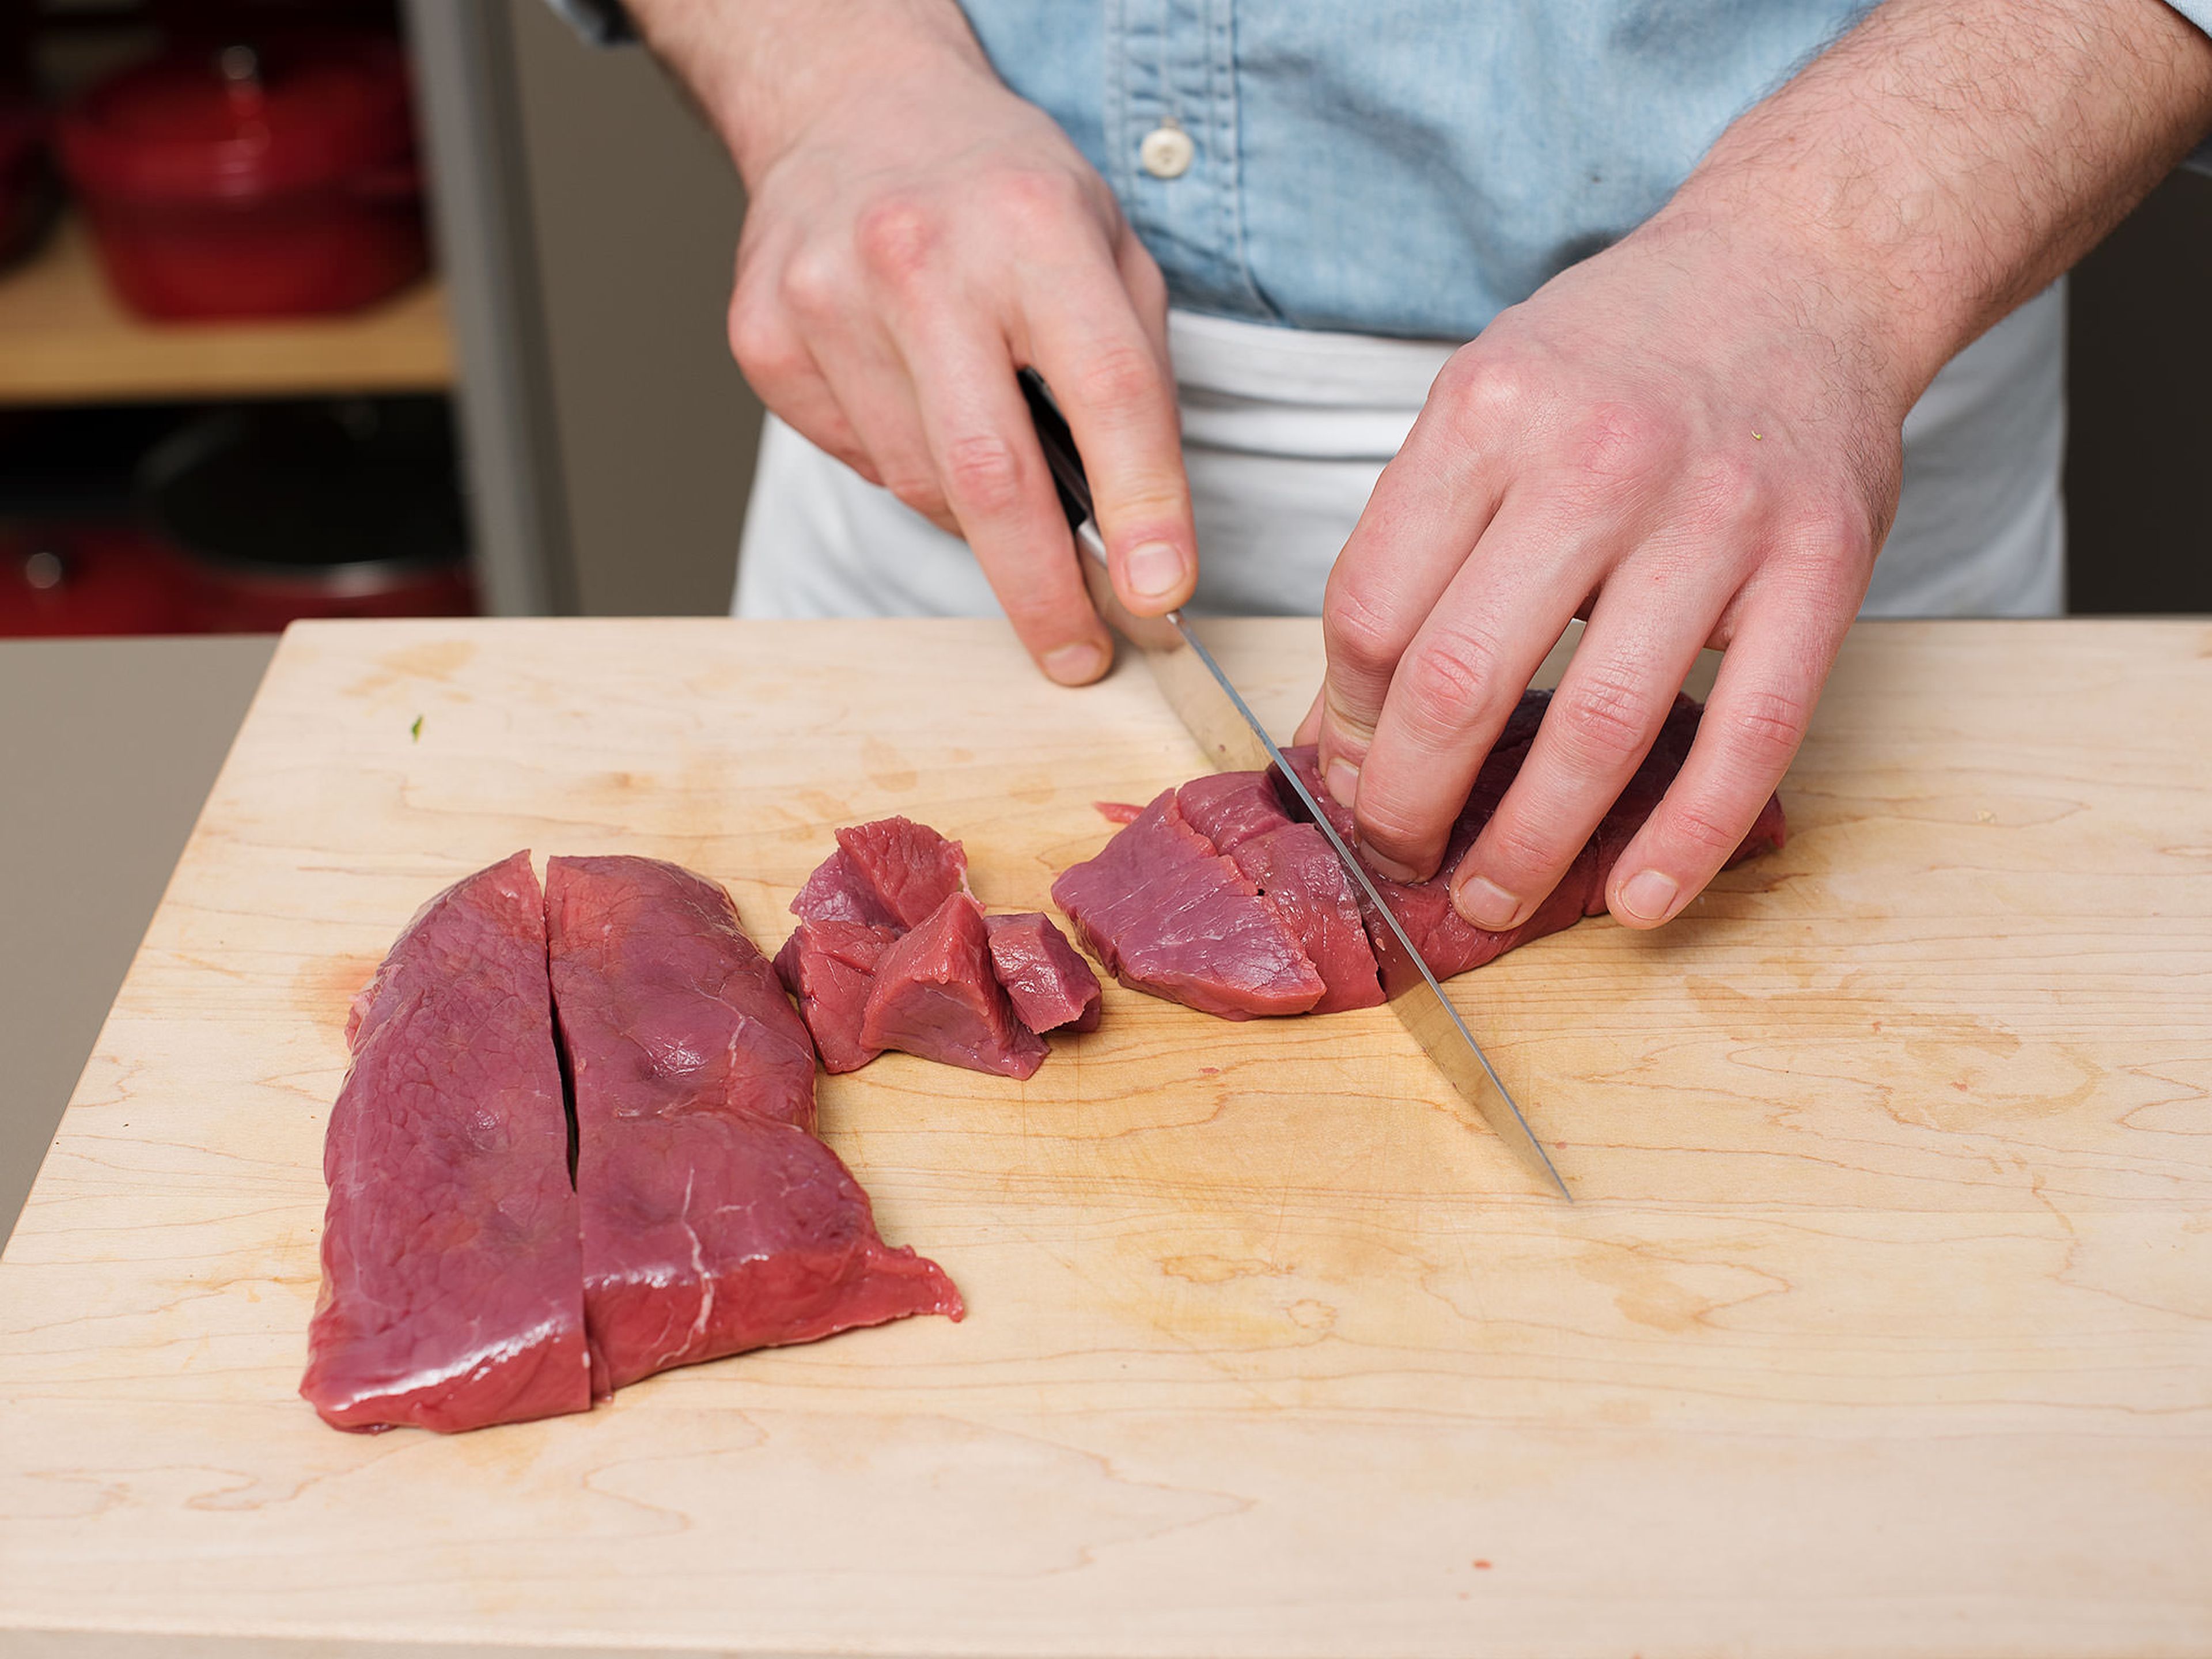 Hähnchenbrustfilet und Rindfleisch in mundgerechte Stücke schneiden.